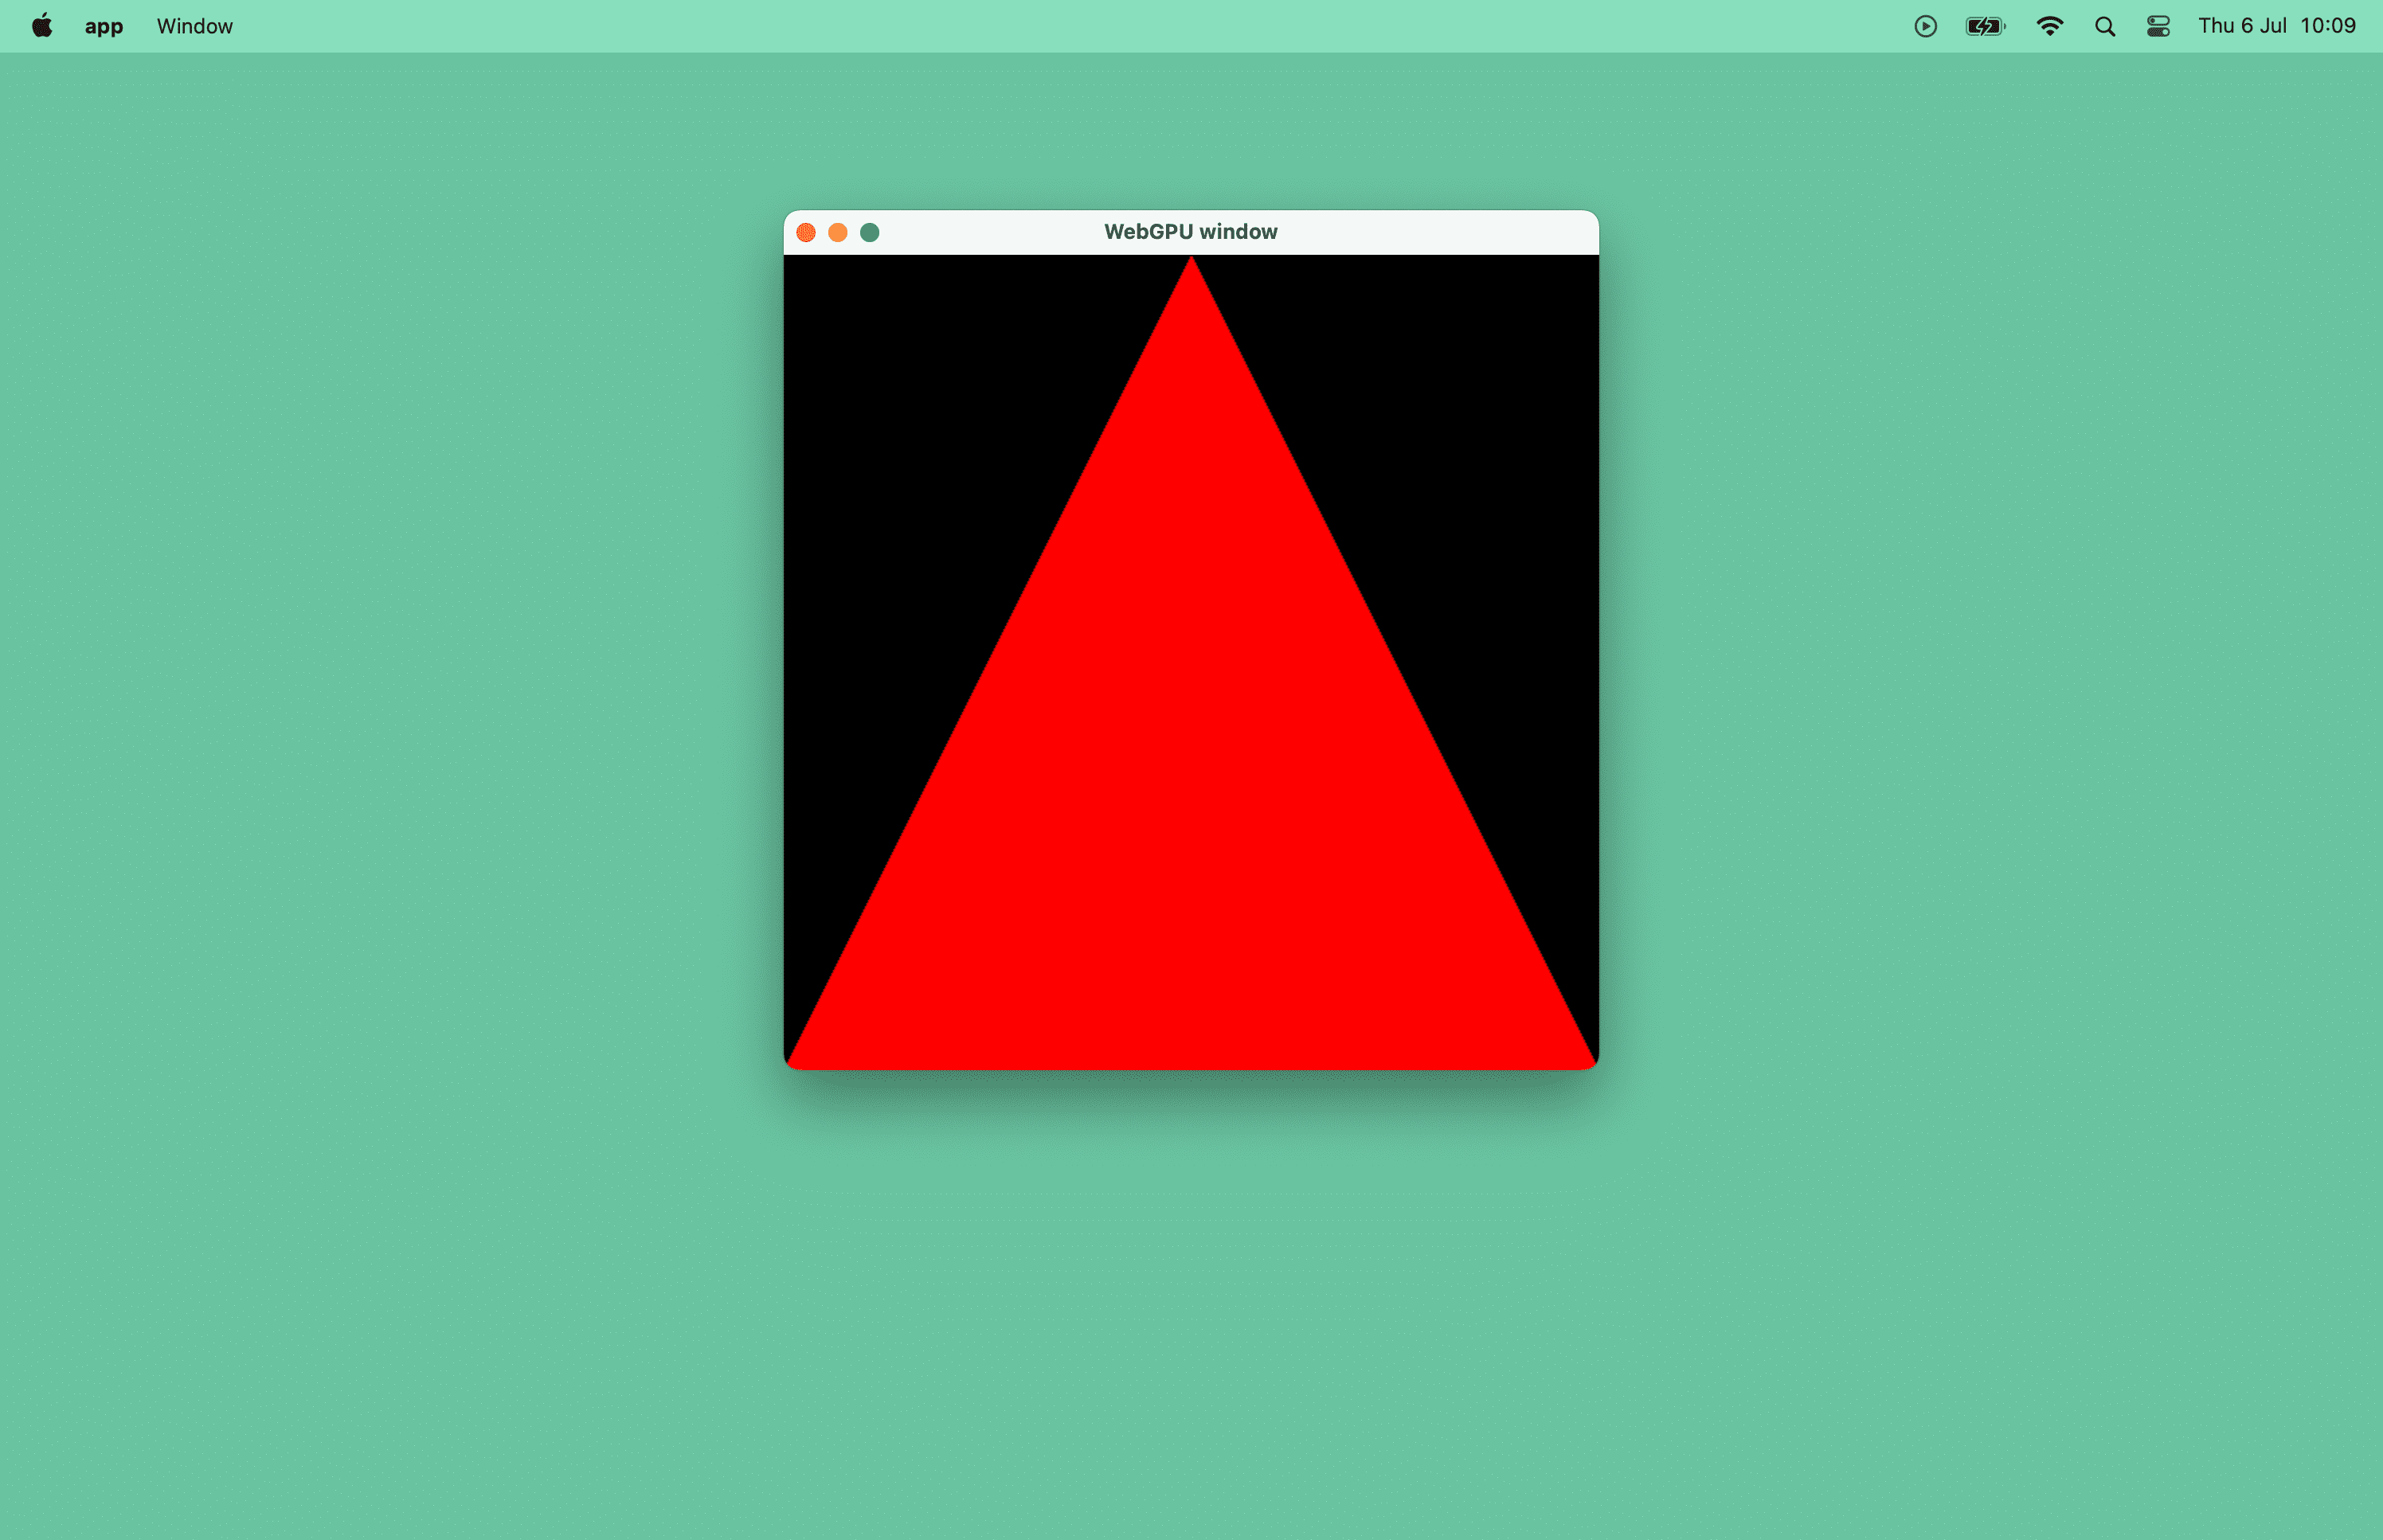 macOS 창에 있는 빨간색 삼각형의 스크린샷